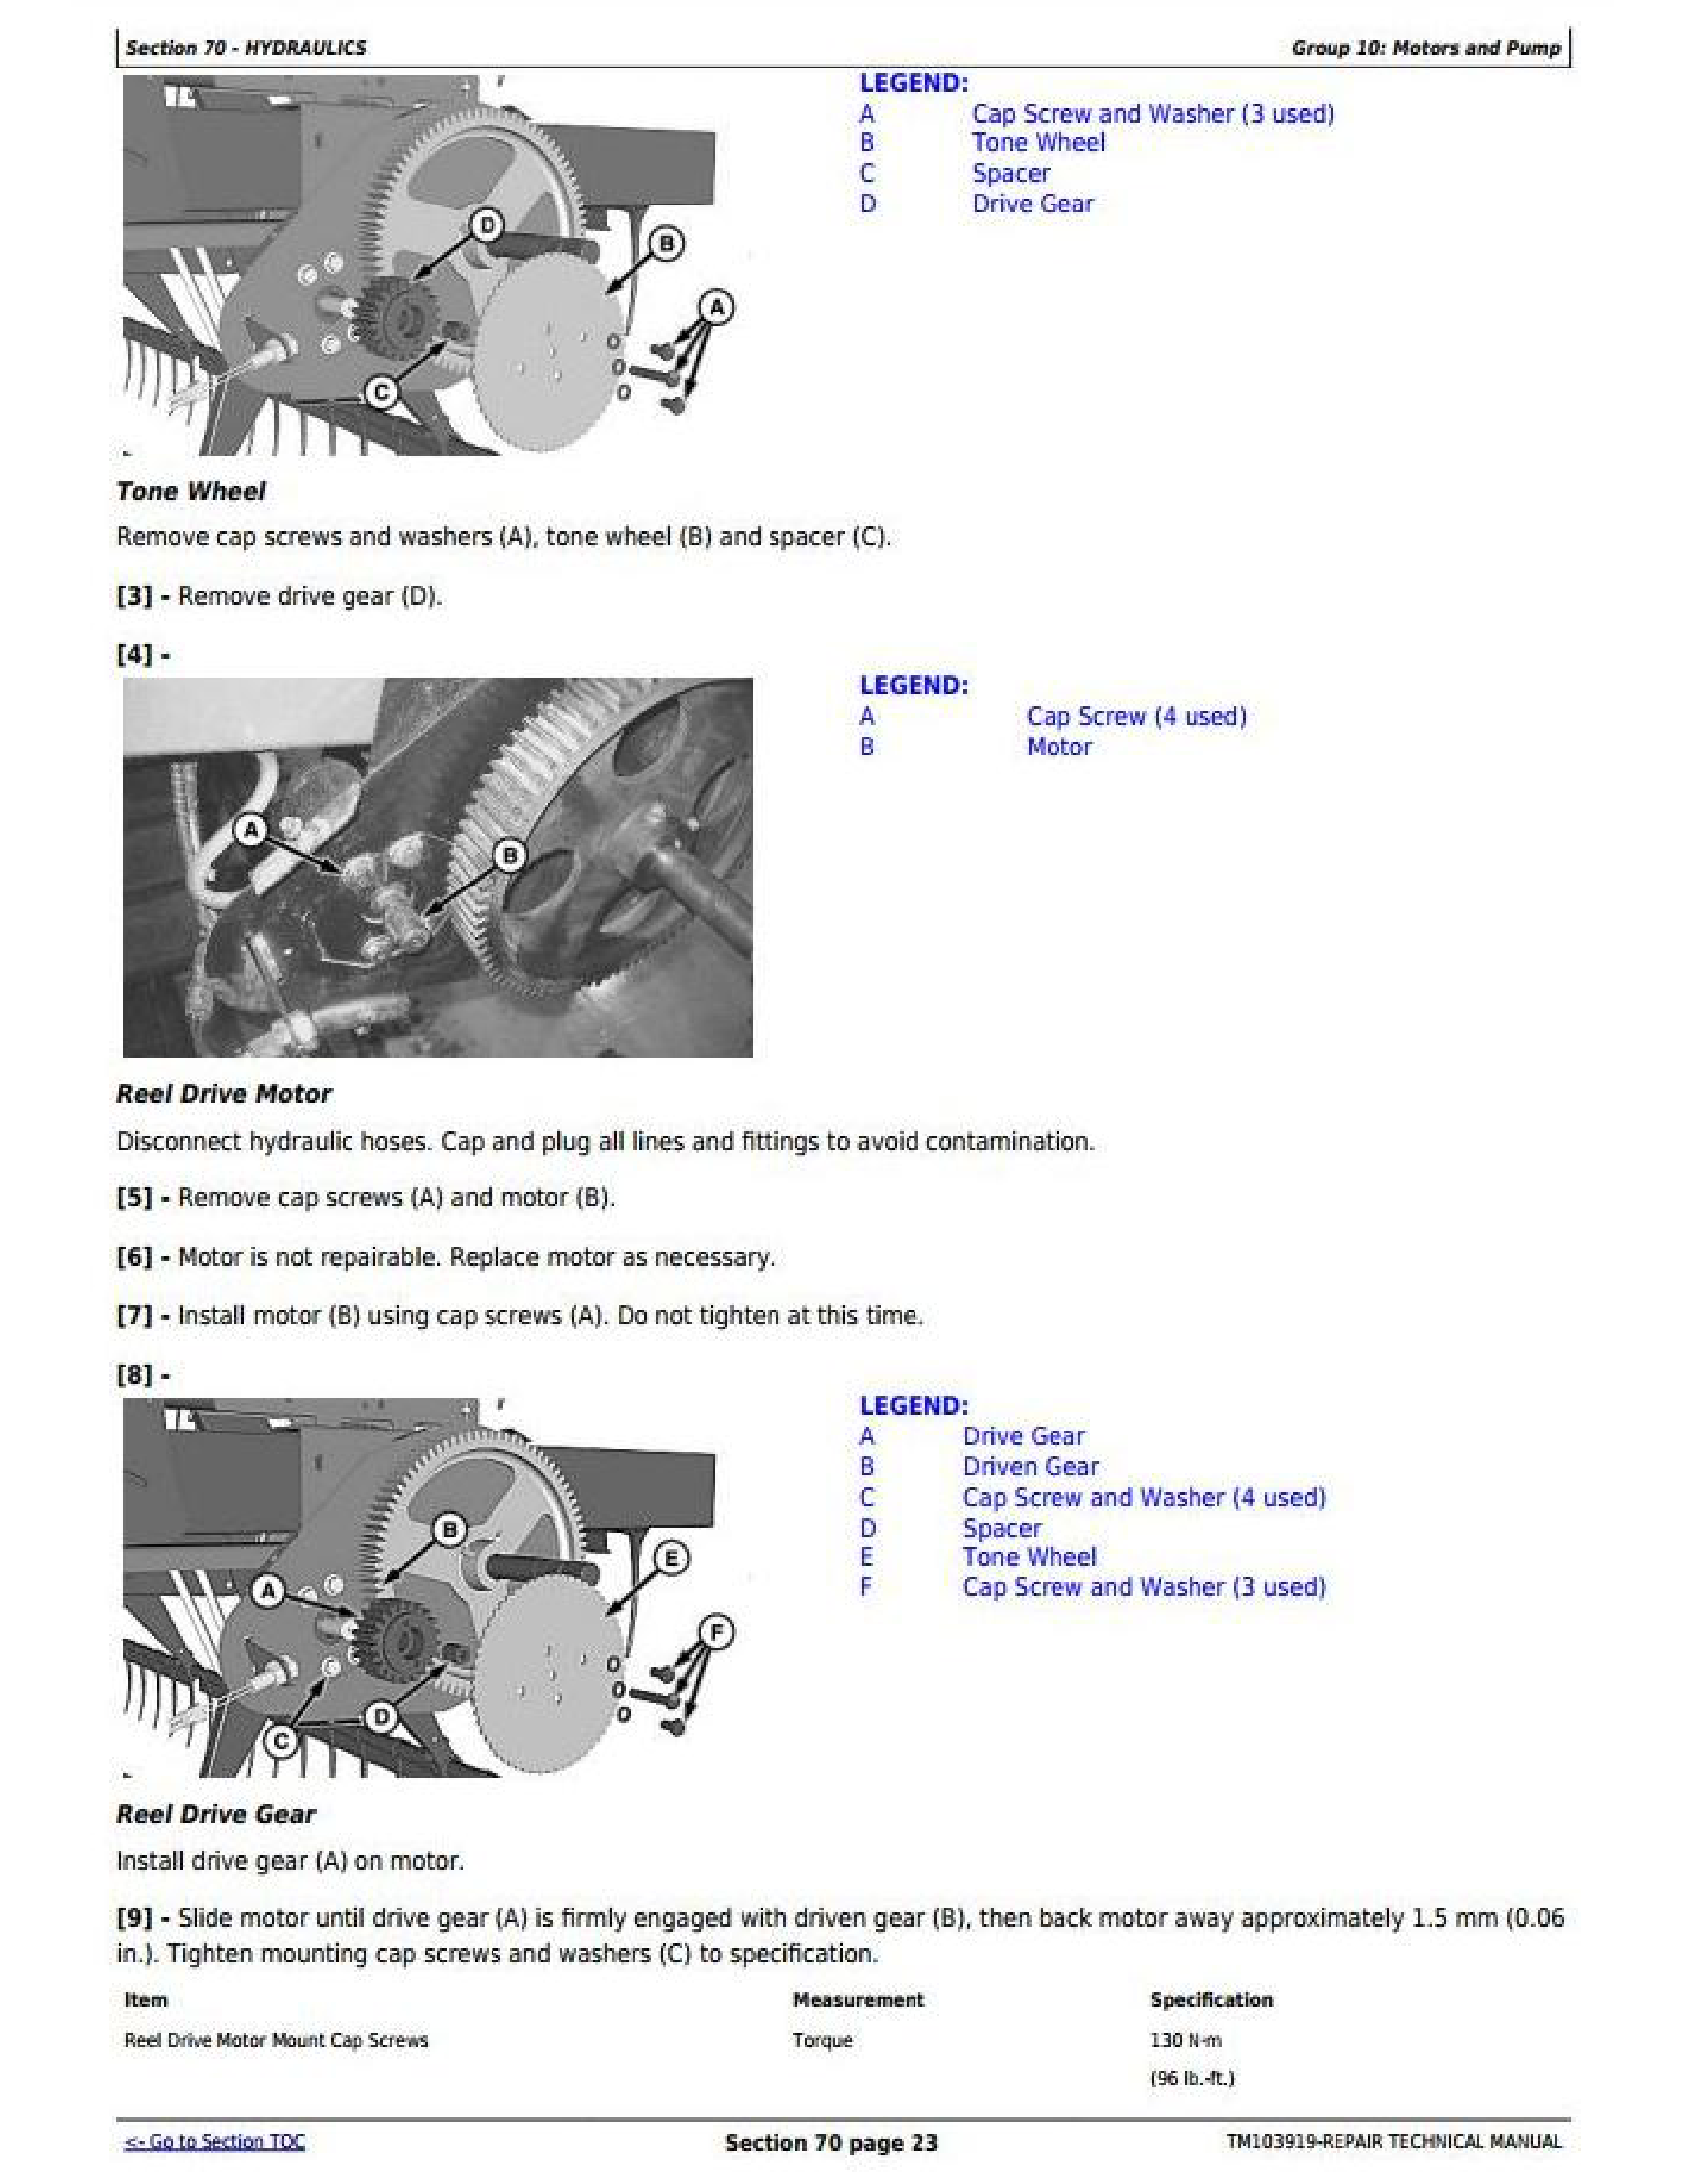 John Deere S2348H manual pdf